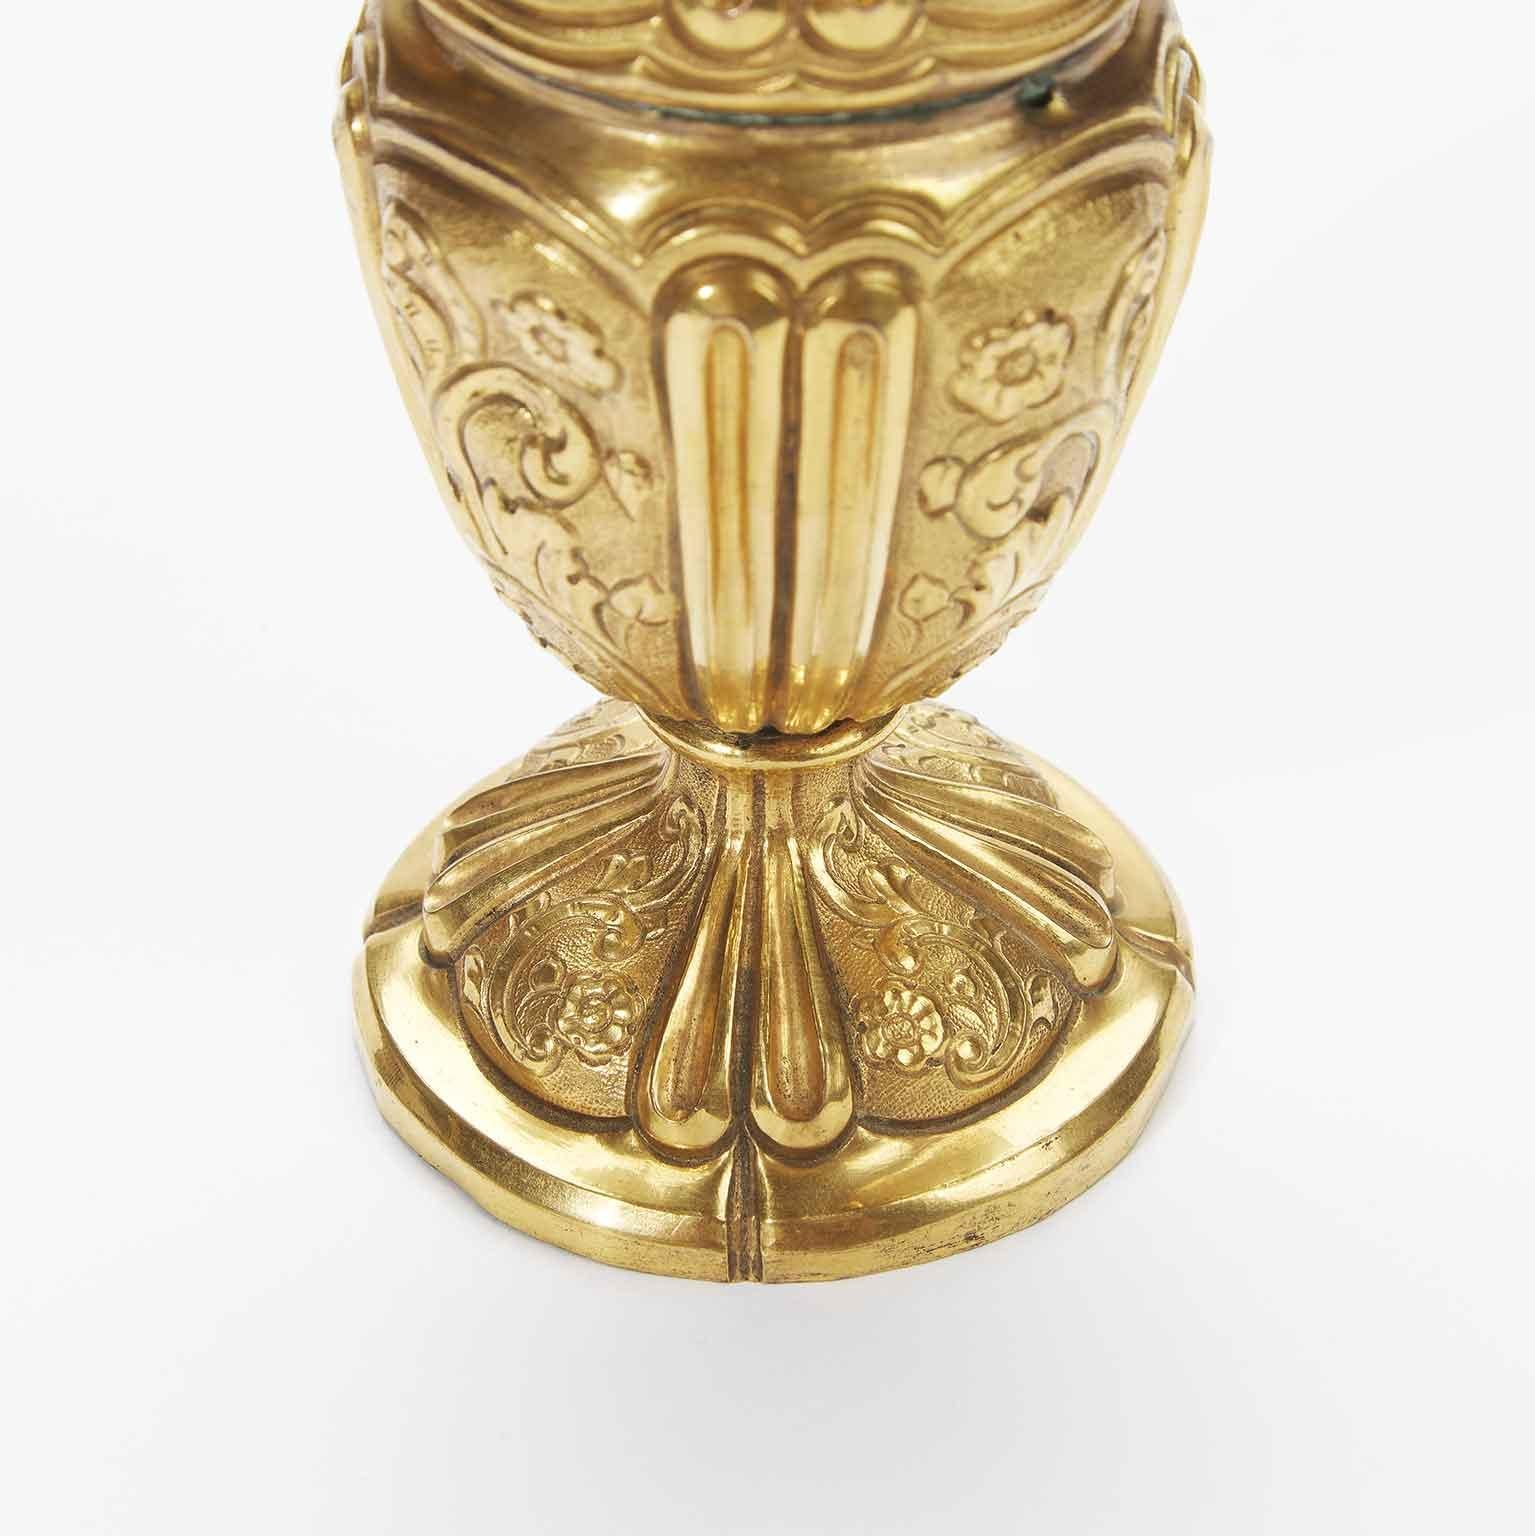 Superbe aiguière italienne en cuivre doré datant du XVIIIe siècle, dont le corps circulaire présente un décor quadripartite défini par le repoussé d'un double cadre vertical nervuré qui encadre des tableaux décorés de rinceaux floraux ; le fond de